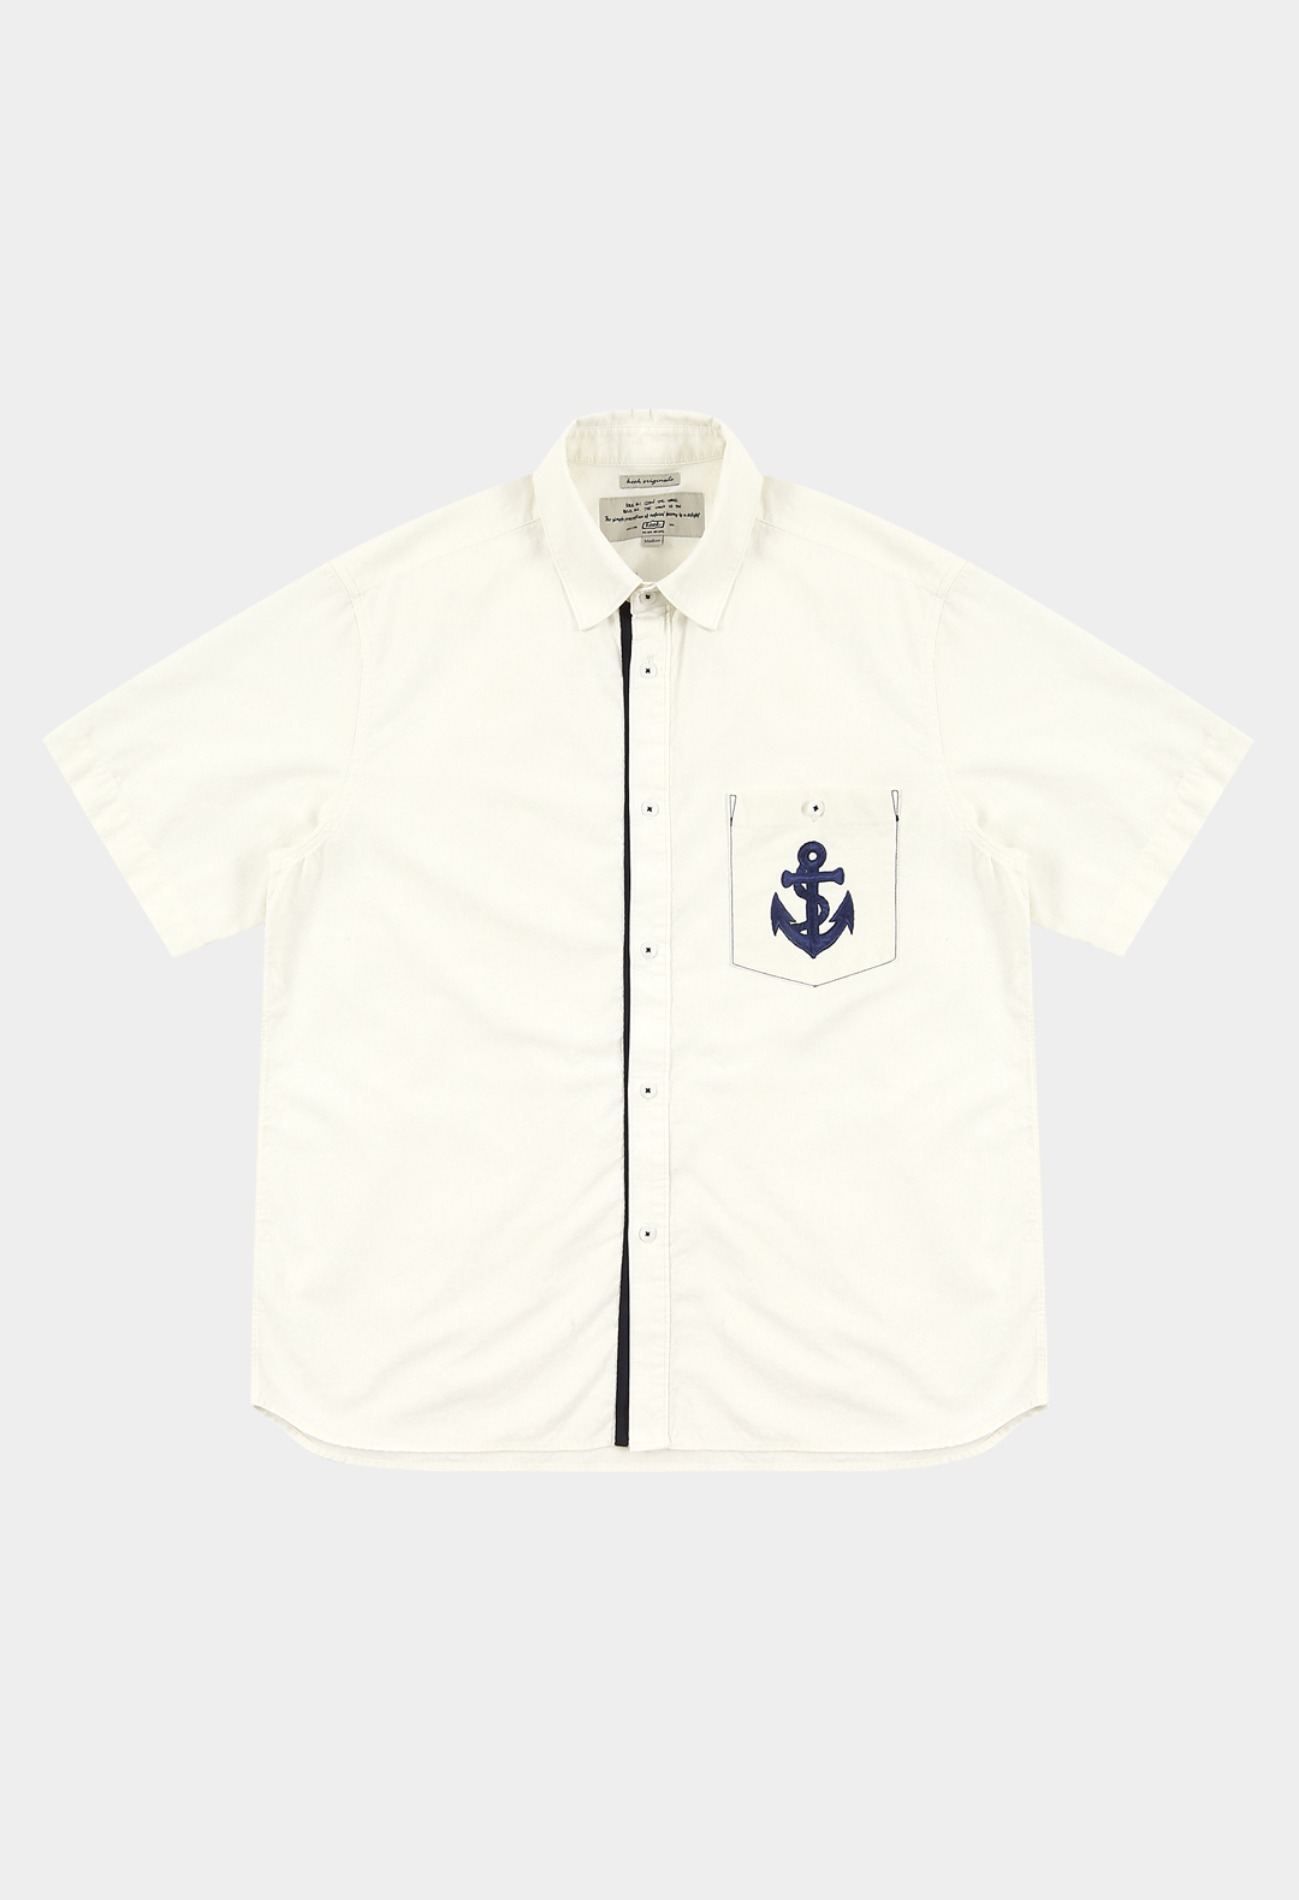 keek [Limited Edition] Anchor Wappen Pocket Shirts - Ivory 스트릿패션 유니섹스브랜드 커플시밀러룩 남자쇼핑몰 여성의류쇼핑몰 후드티 힙색